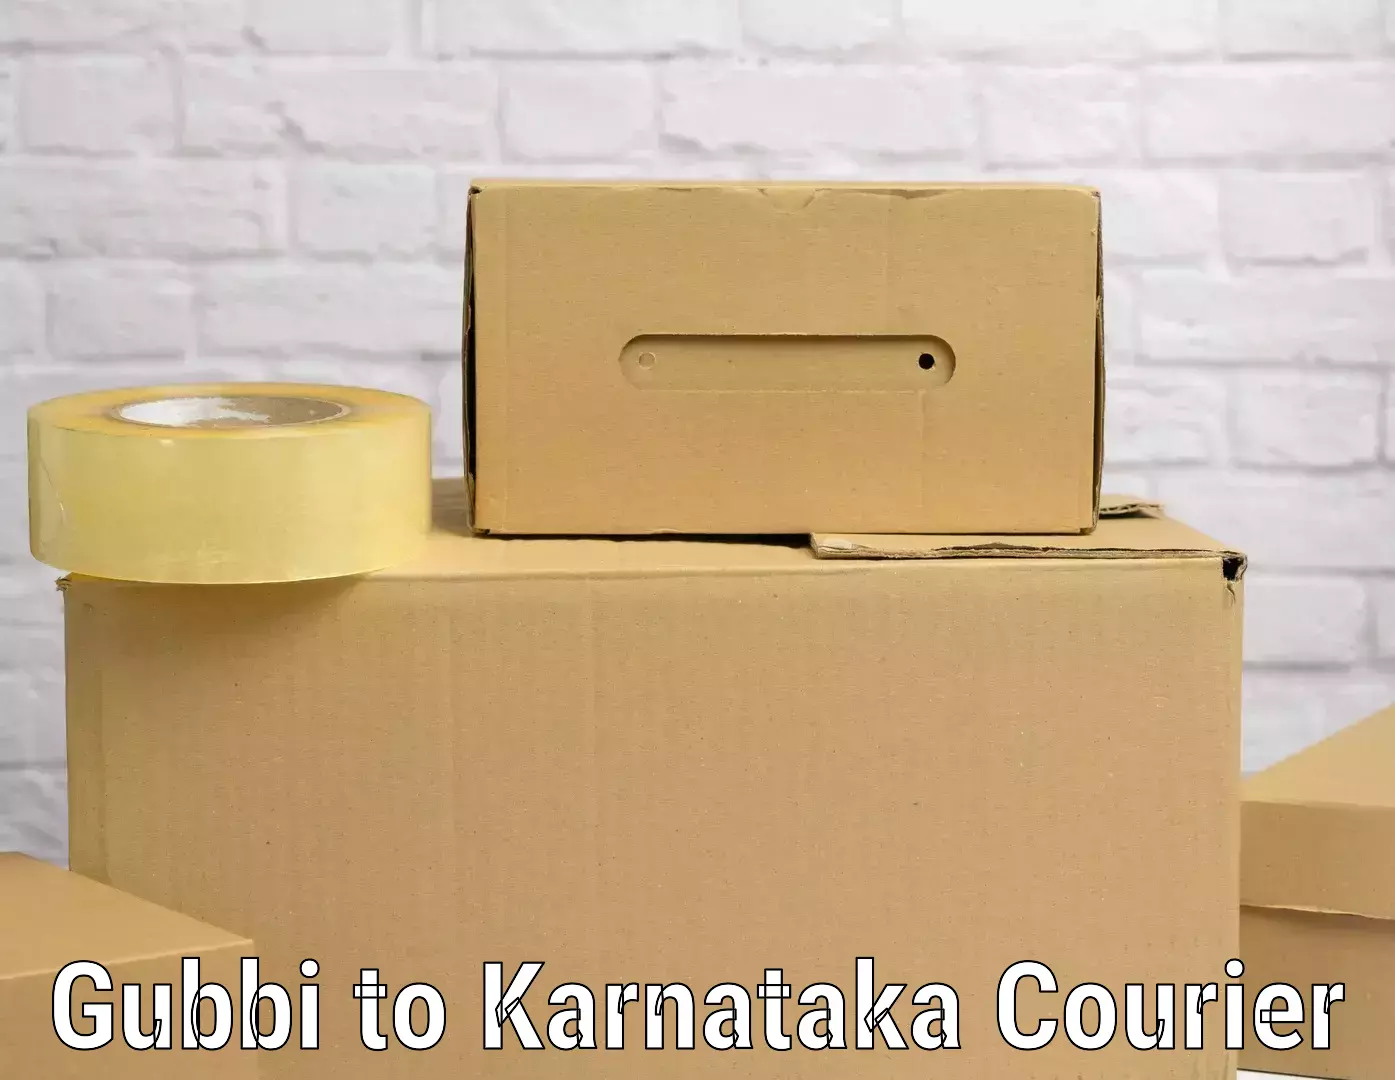 Simplified luggage transport Gubbi to Karnataka